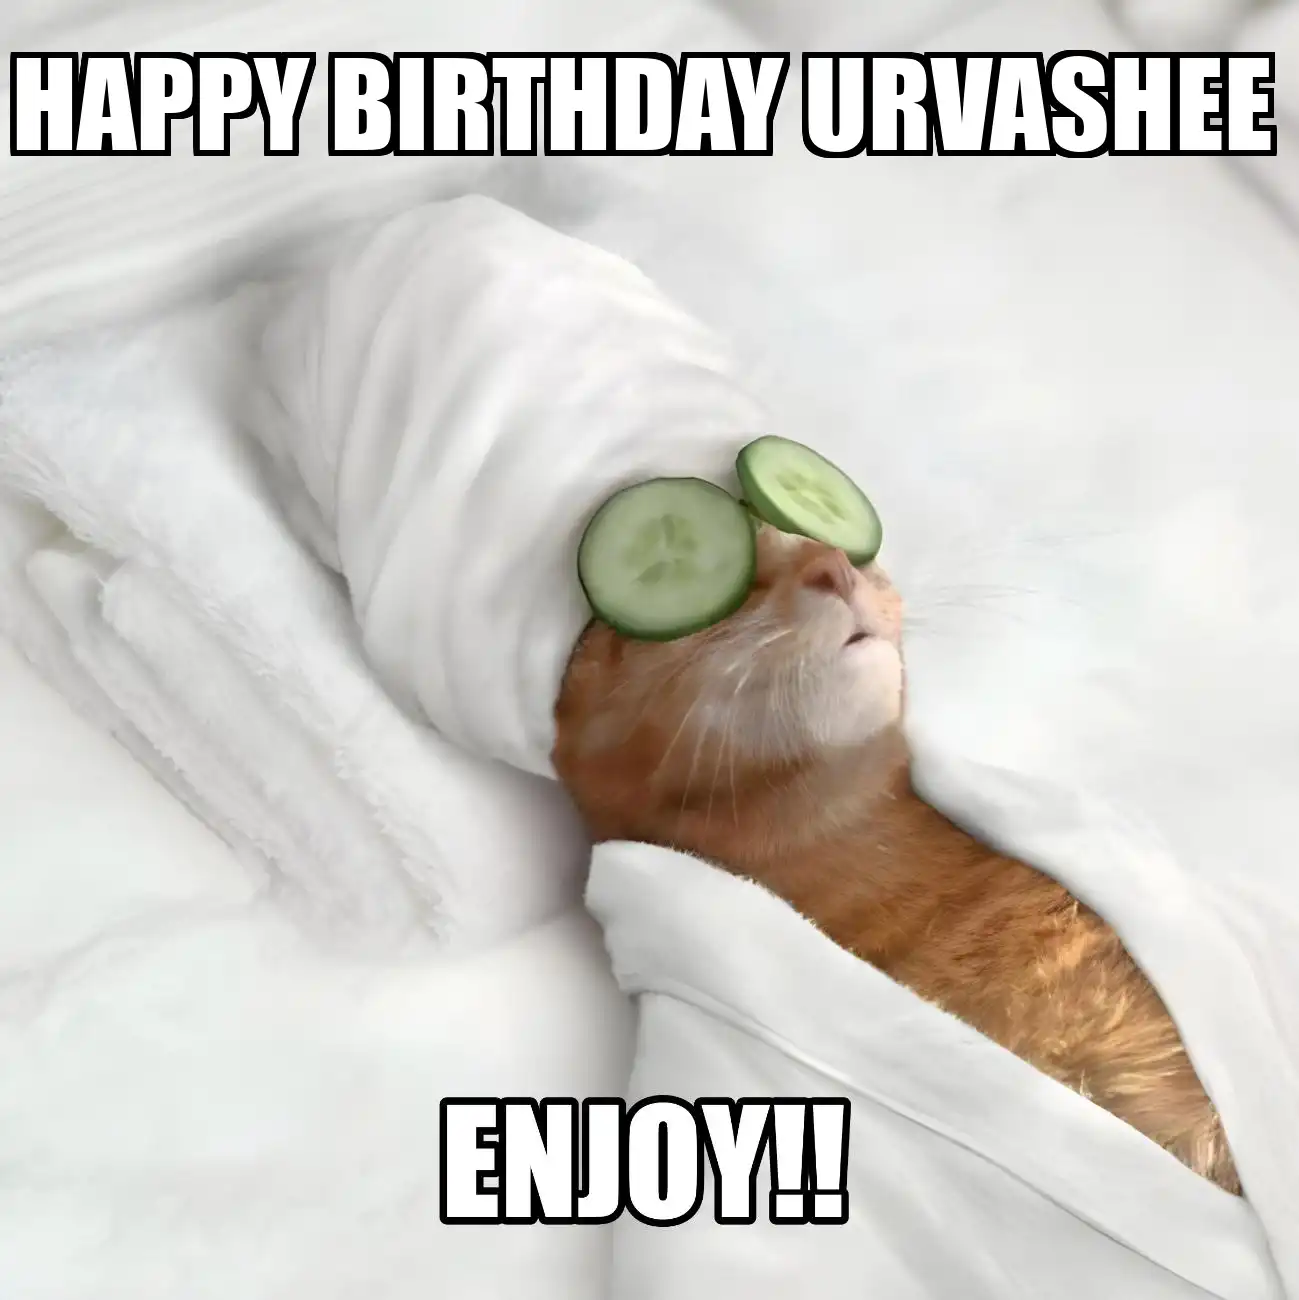 Happy Birthday Urvashee Enjoy Cat Meme